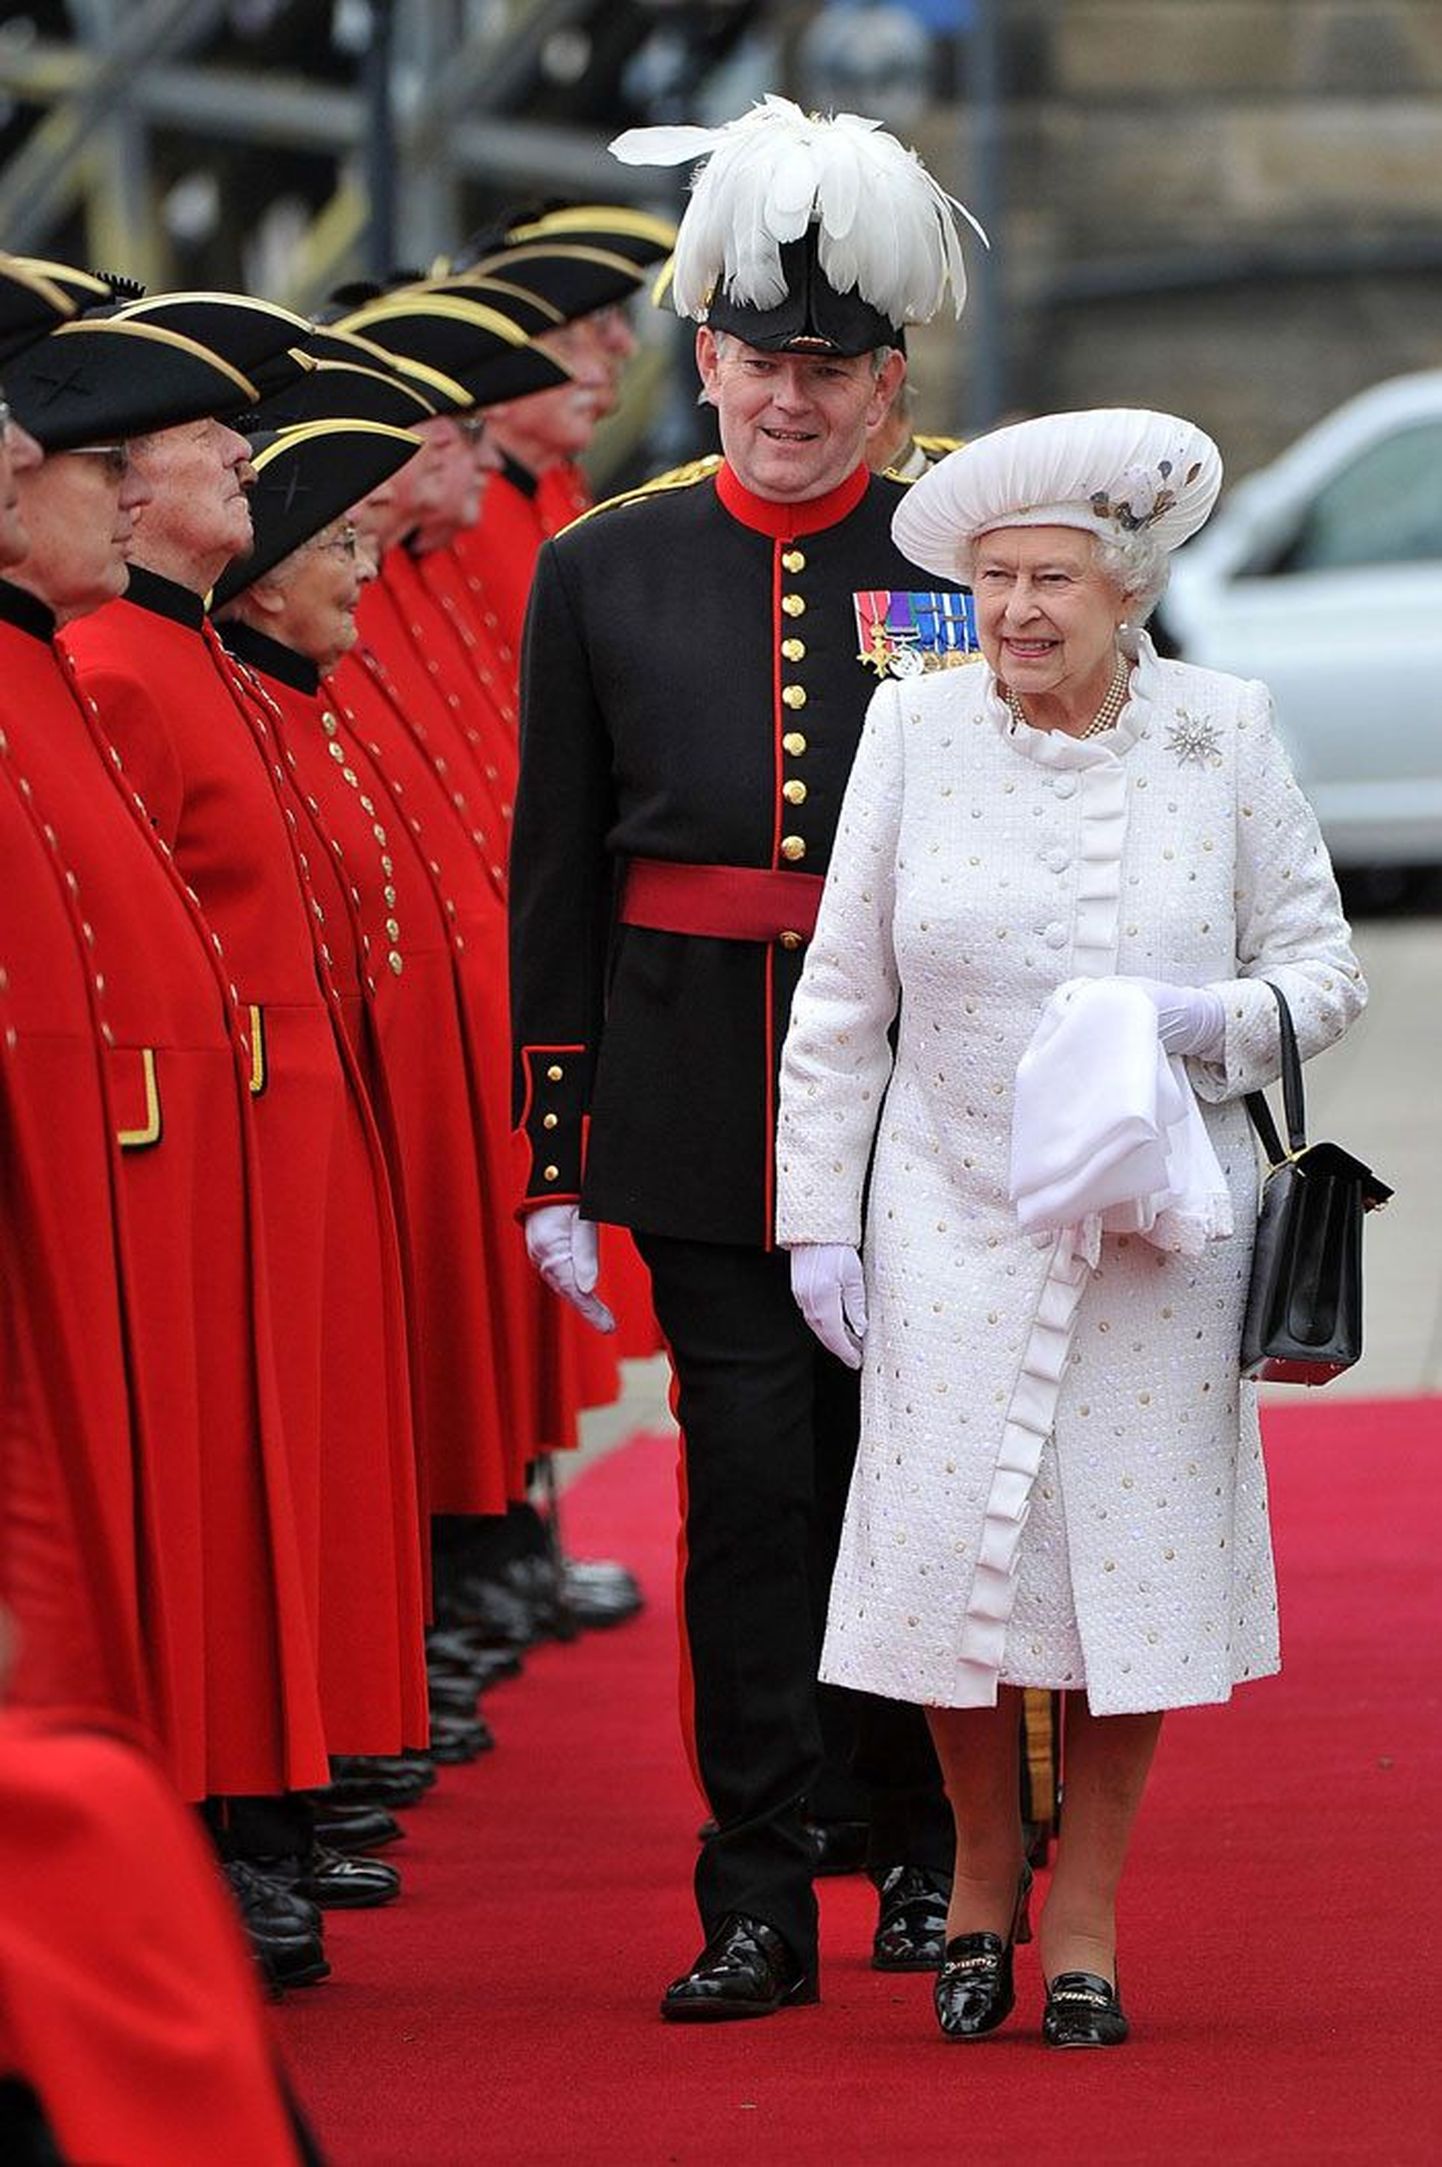 Kuuskümmend aastat võimul: kuninganna Elizabeth II troonijuubeli pidustustel – pidulikult valges. Pärlid ja pross ning mustad kingad ja ridikül kuuluvad tema garderoobi raudvarasse.